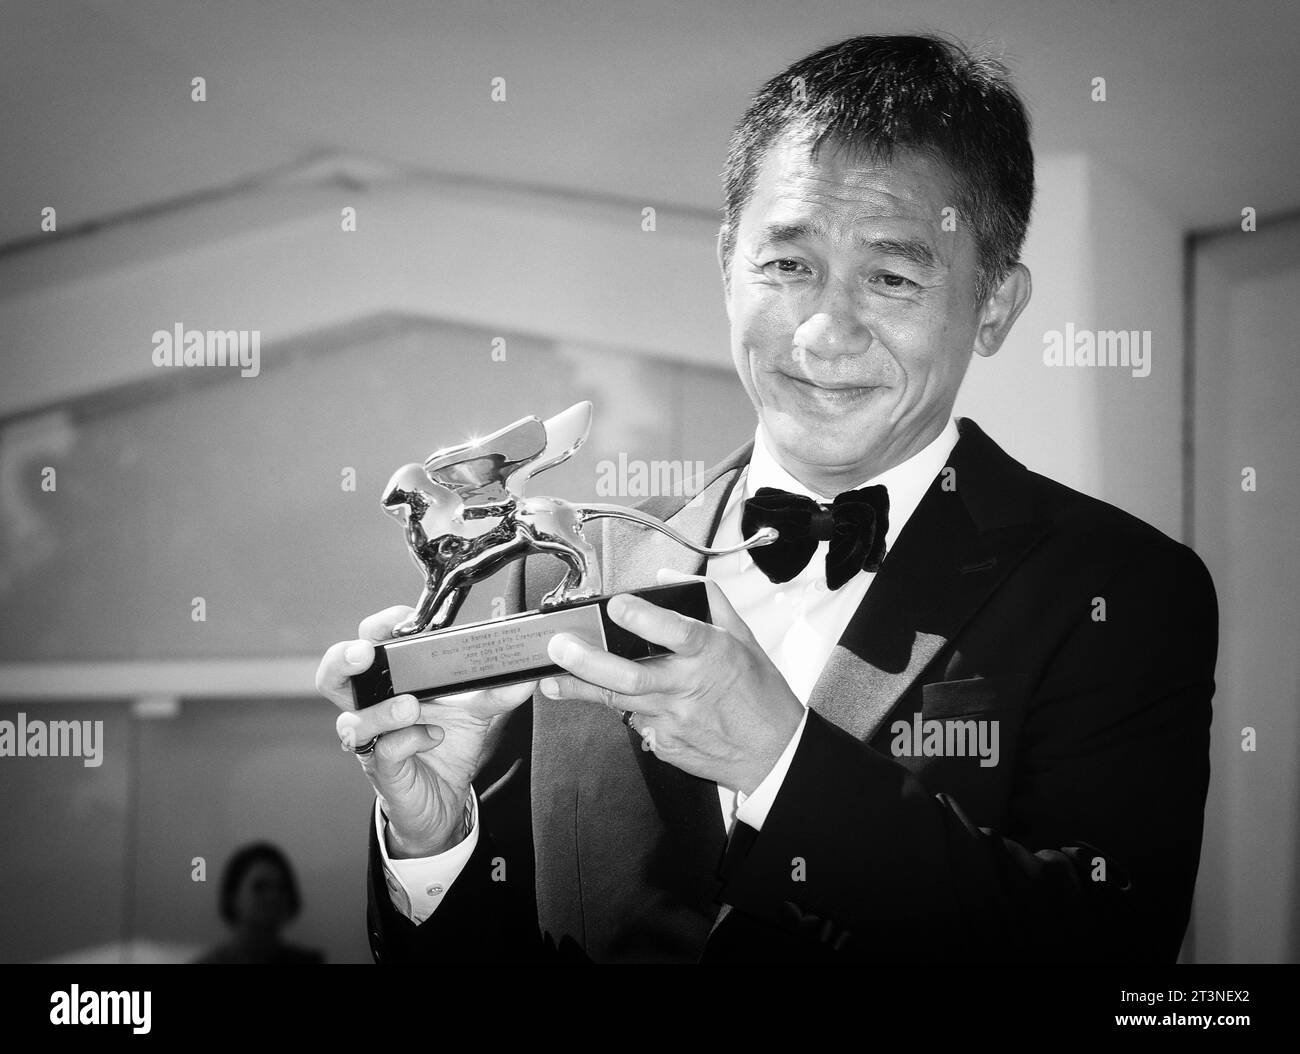 Actor Tony Leung Chiu-wai Stock Photo